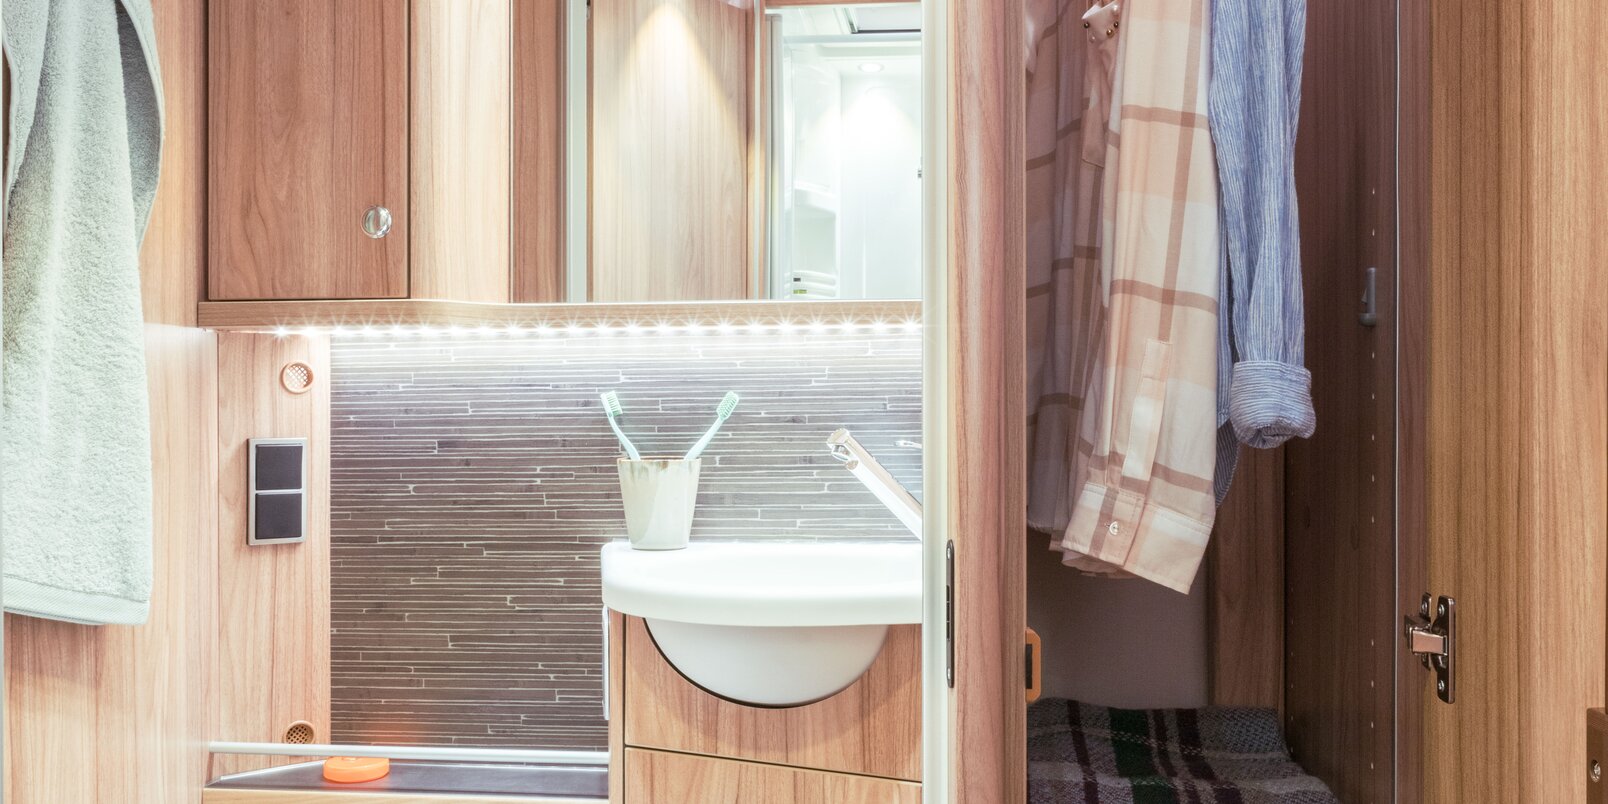 Bad im HYMER Exsis-t: Toilette, Waschbecken, Spiegel, Stauschränke, Dachfenster und daneben hoher, befüllter Kleiderschrank